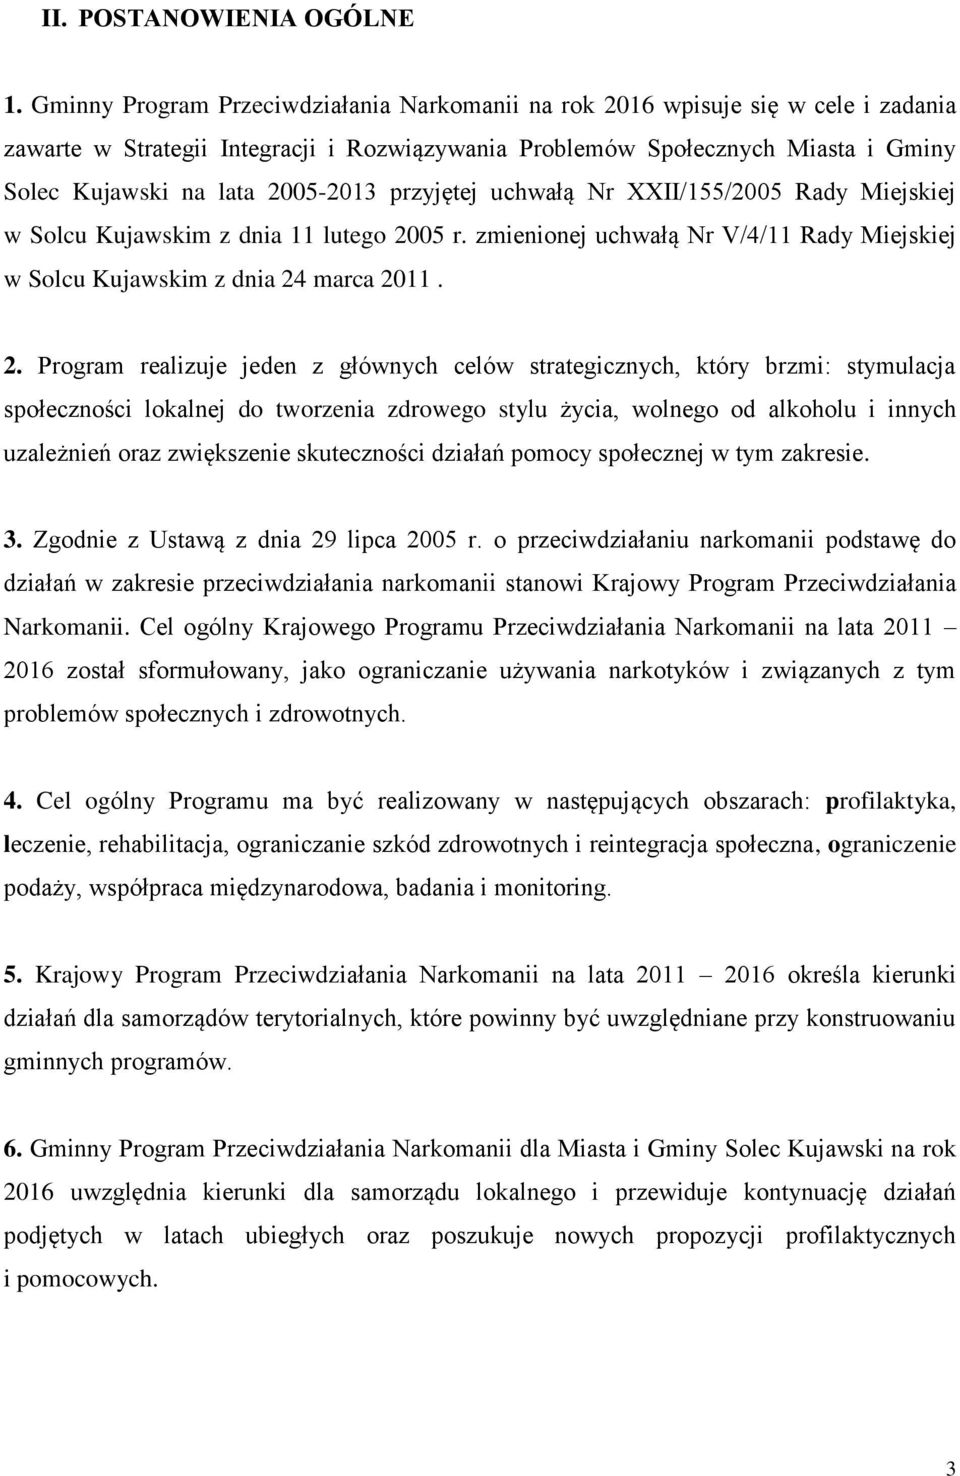 2005-2013 przyjętej uchwałą Nr XXII/155/2005 Rady Miejskiej w Solcu Kujawskim z dnia 11 lutego 20